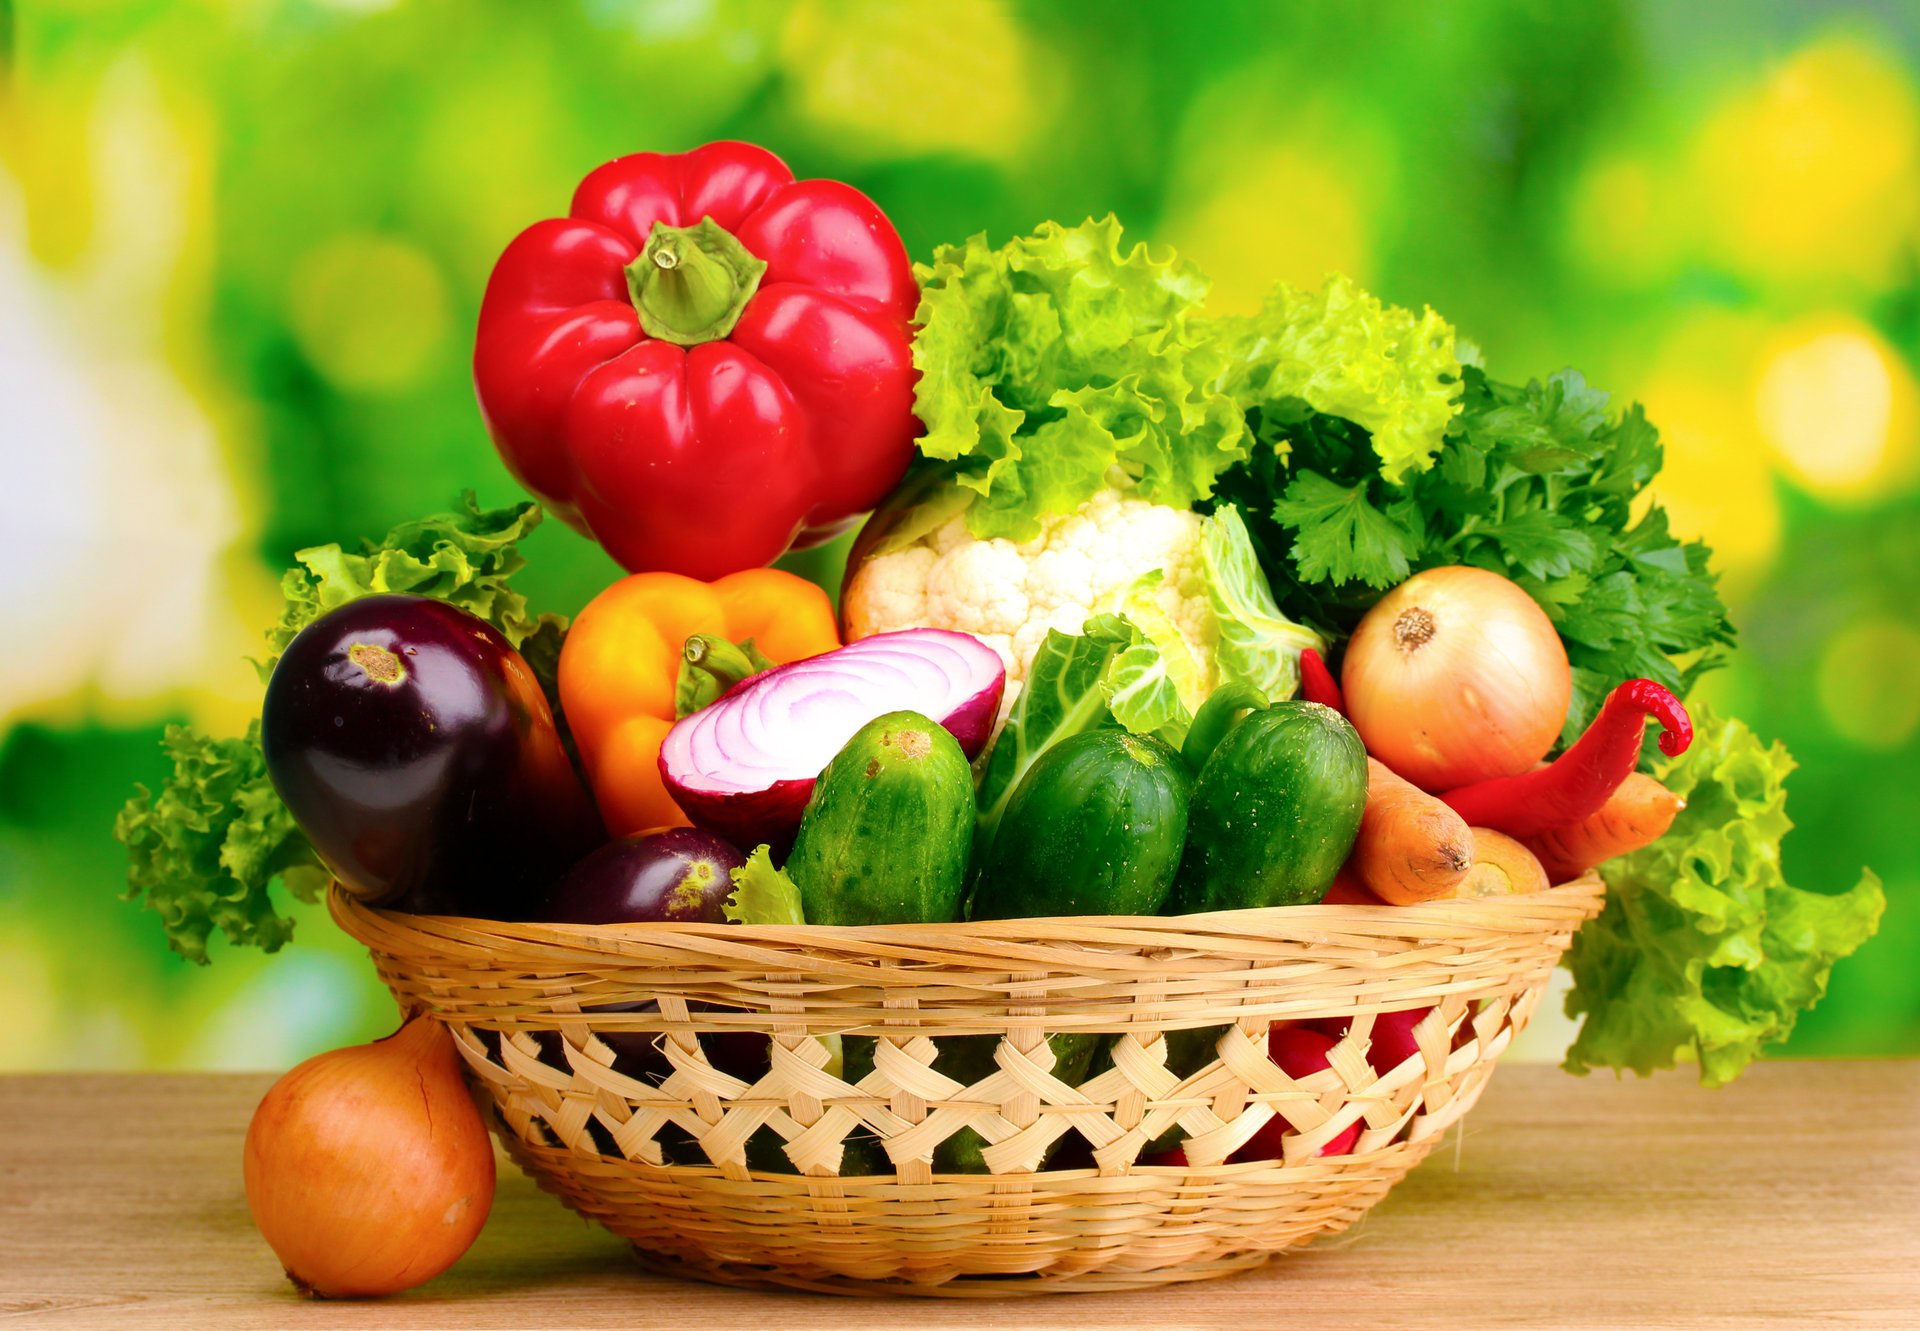 Fragrant vegetables in the basket